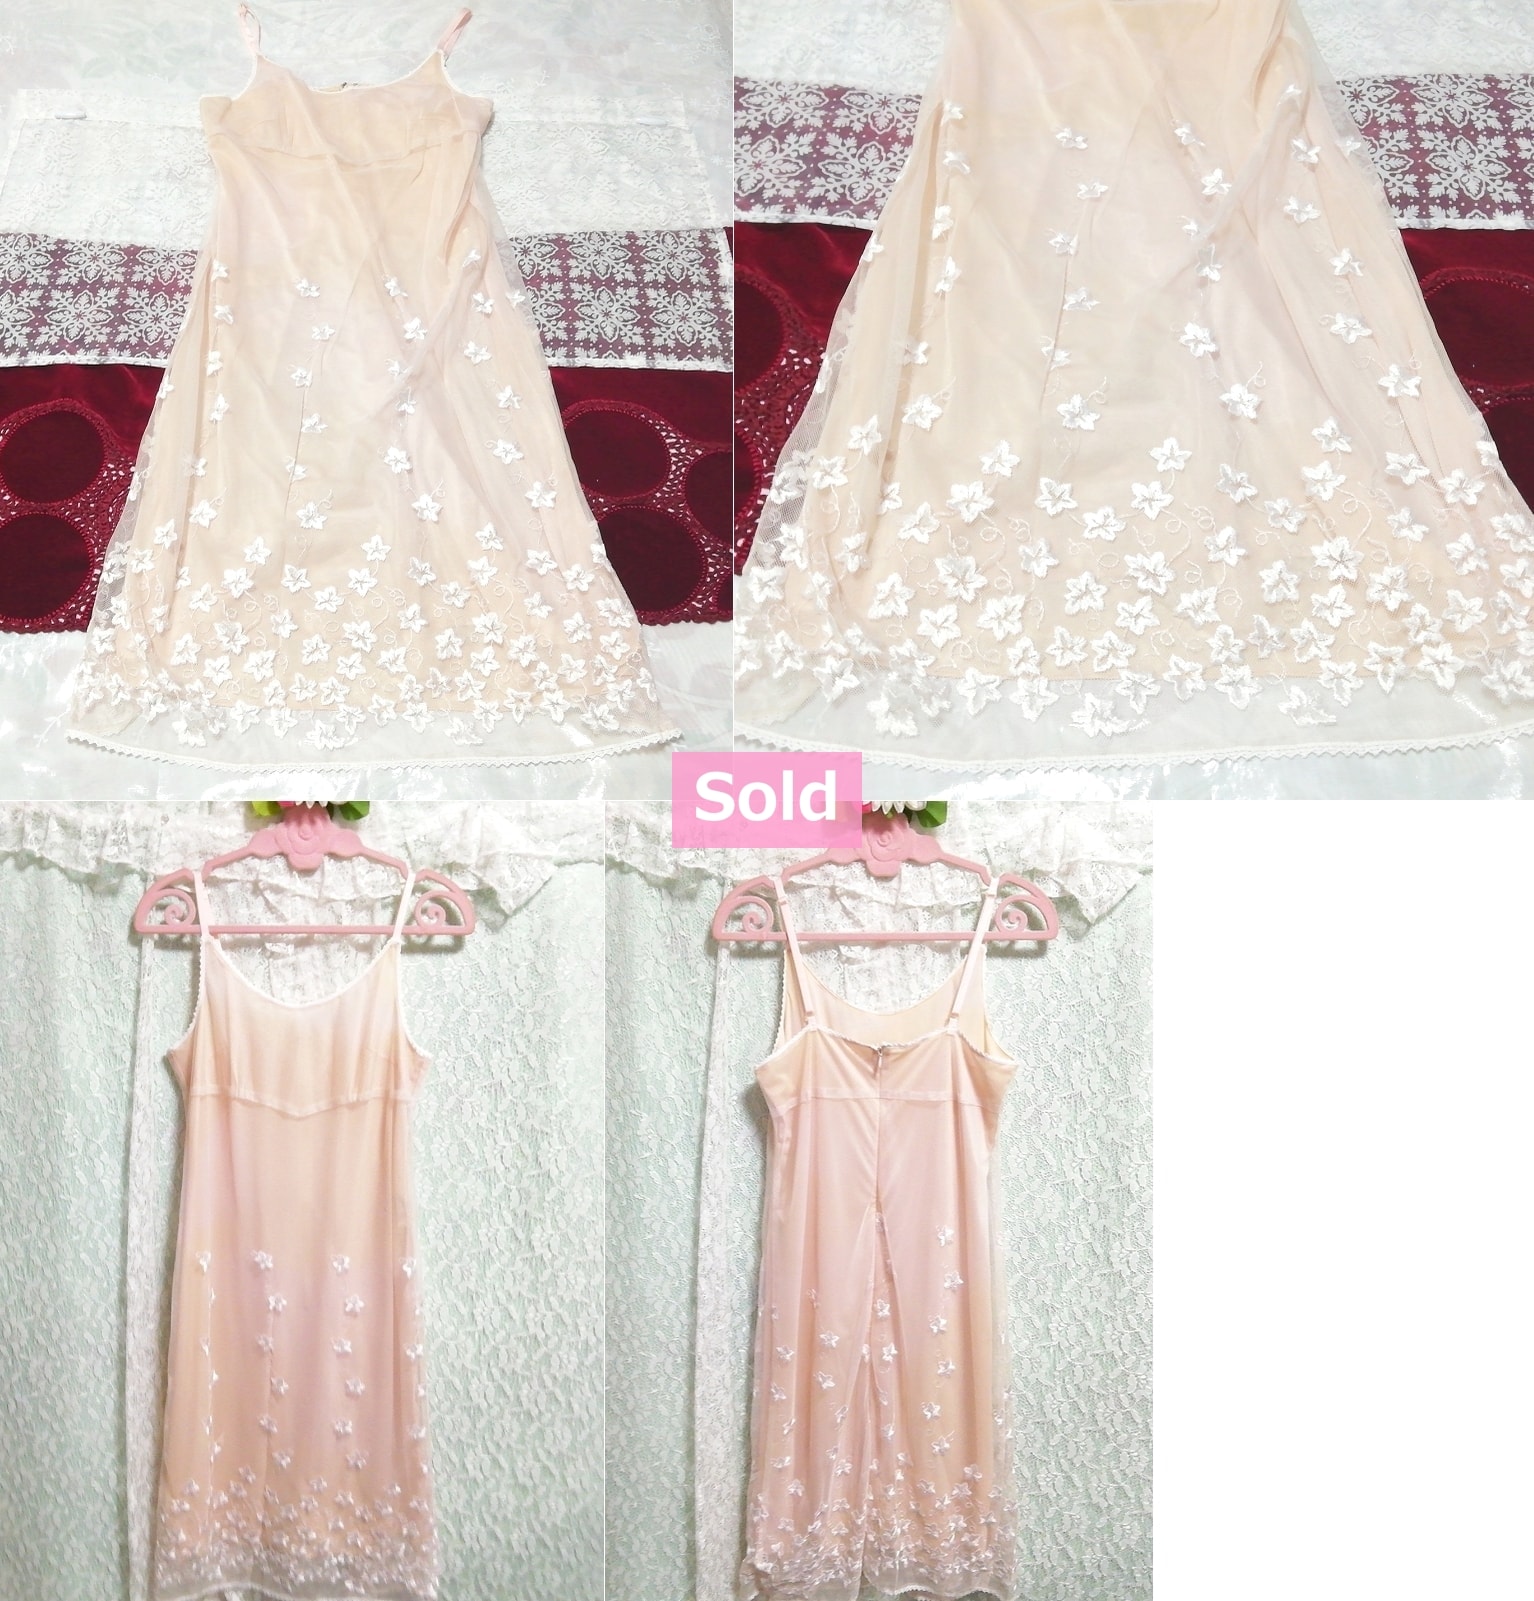 粉色和白色花朵刺绣蕾丝睡衣吊带背心娃娃装连衣裙, 时尚, 女士时装, 吊带背心